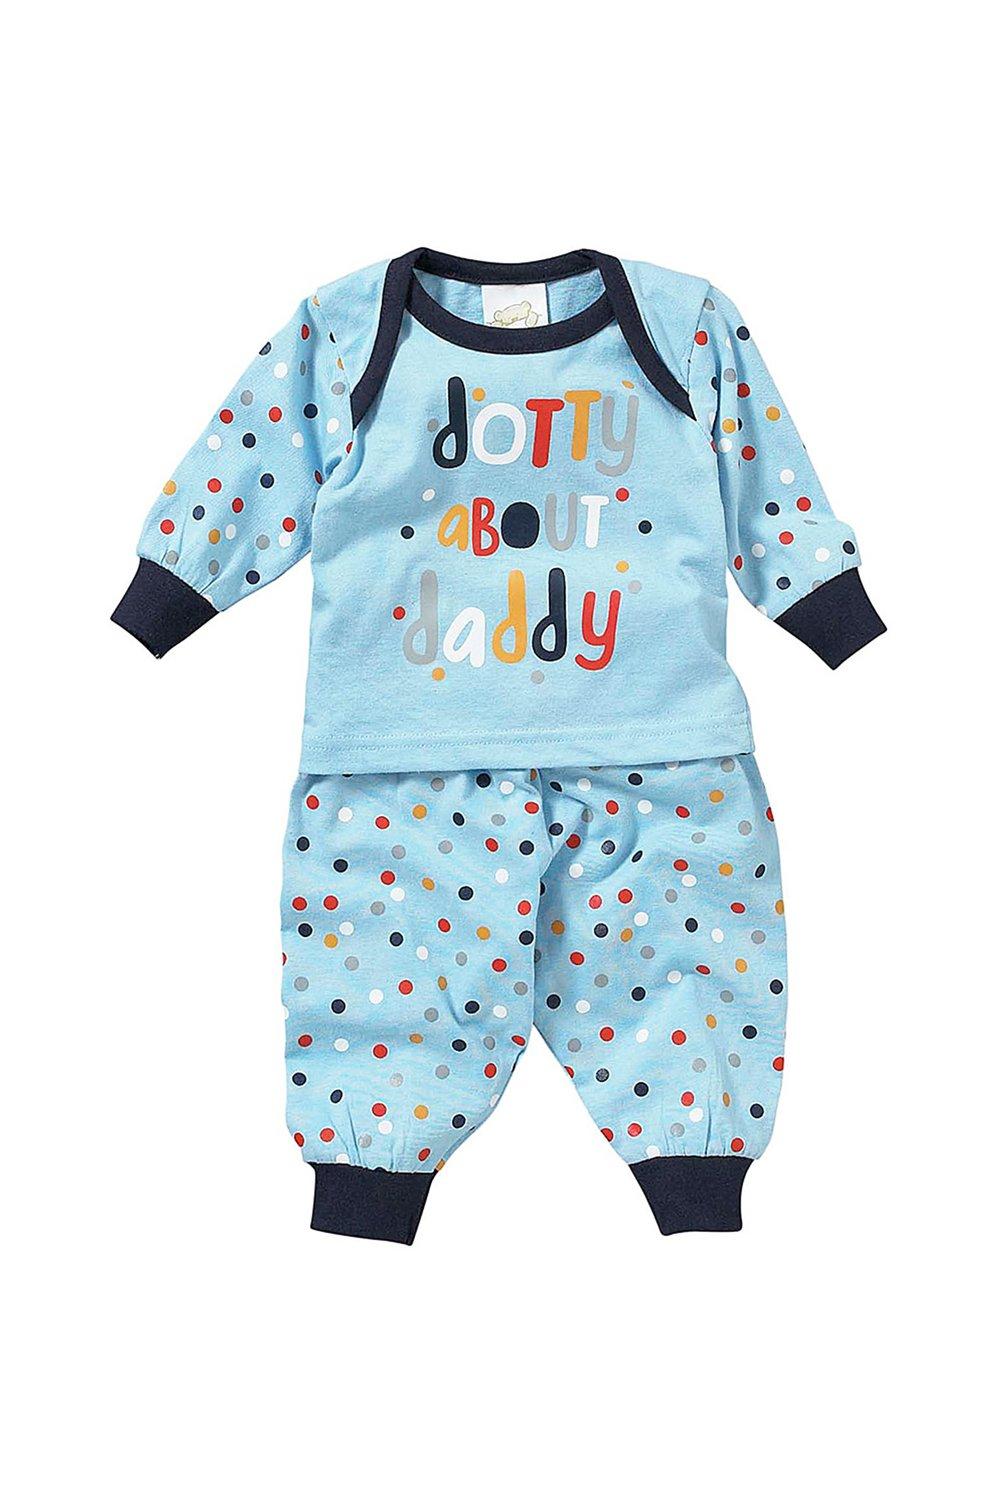 Boys Dotty About Daddy Pyjama Set